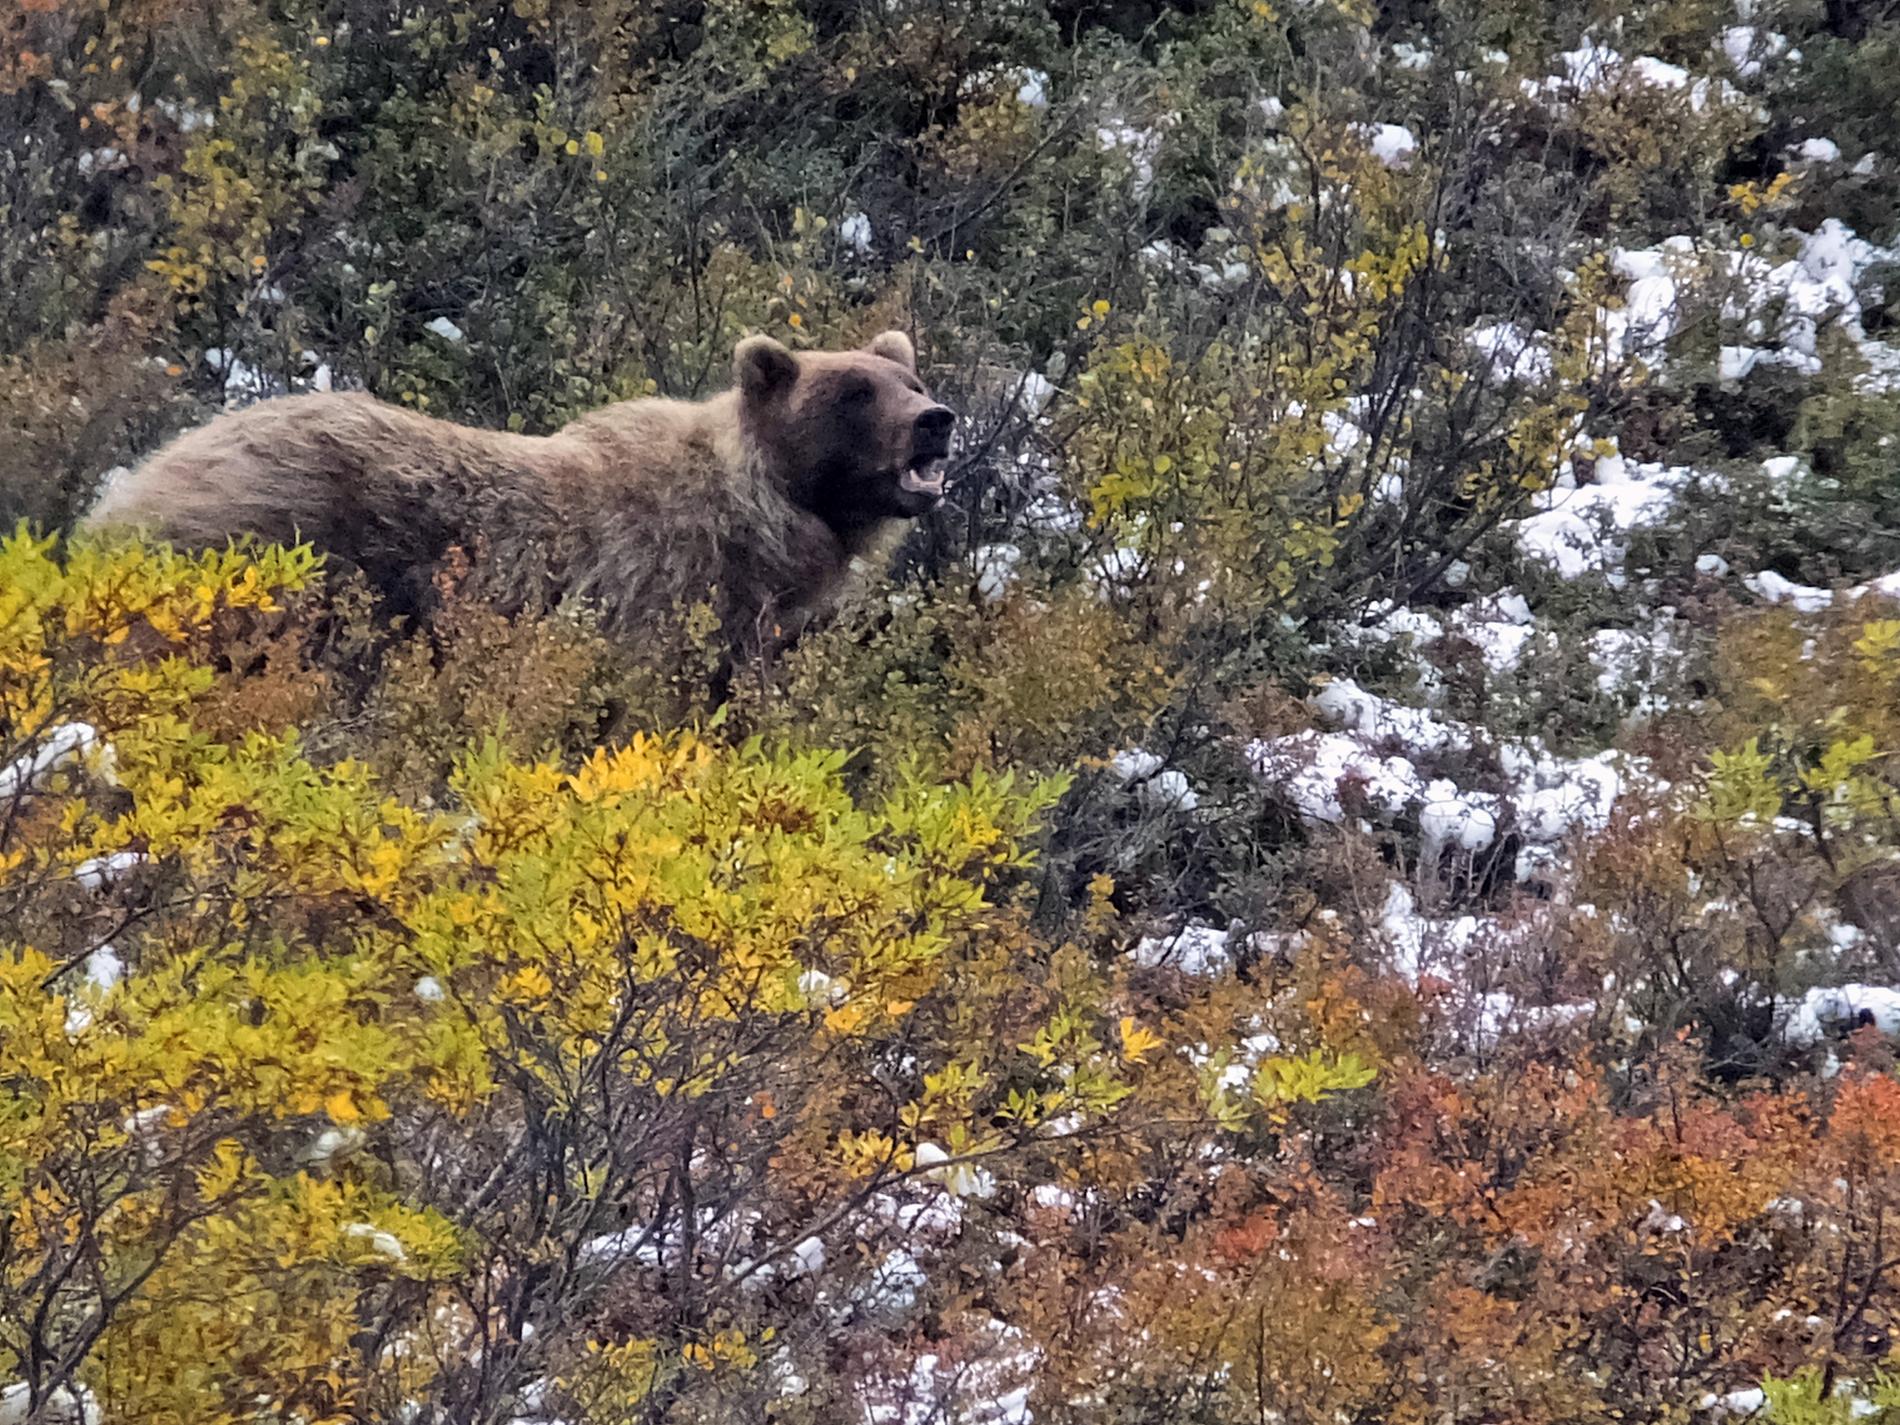 En grizzlybjörn i Alaska, björnen på bilden har inget med texten att göra.